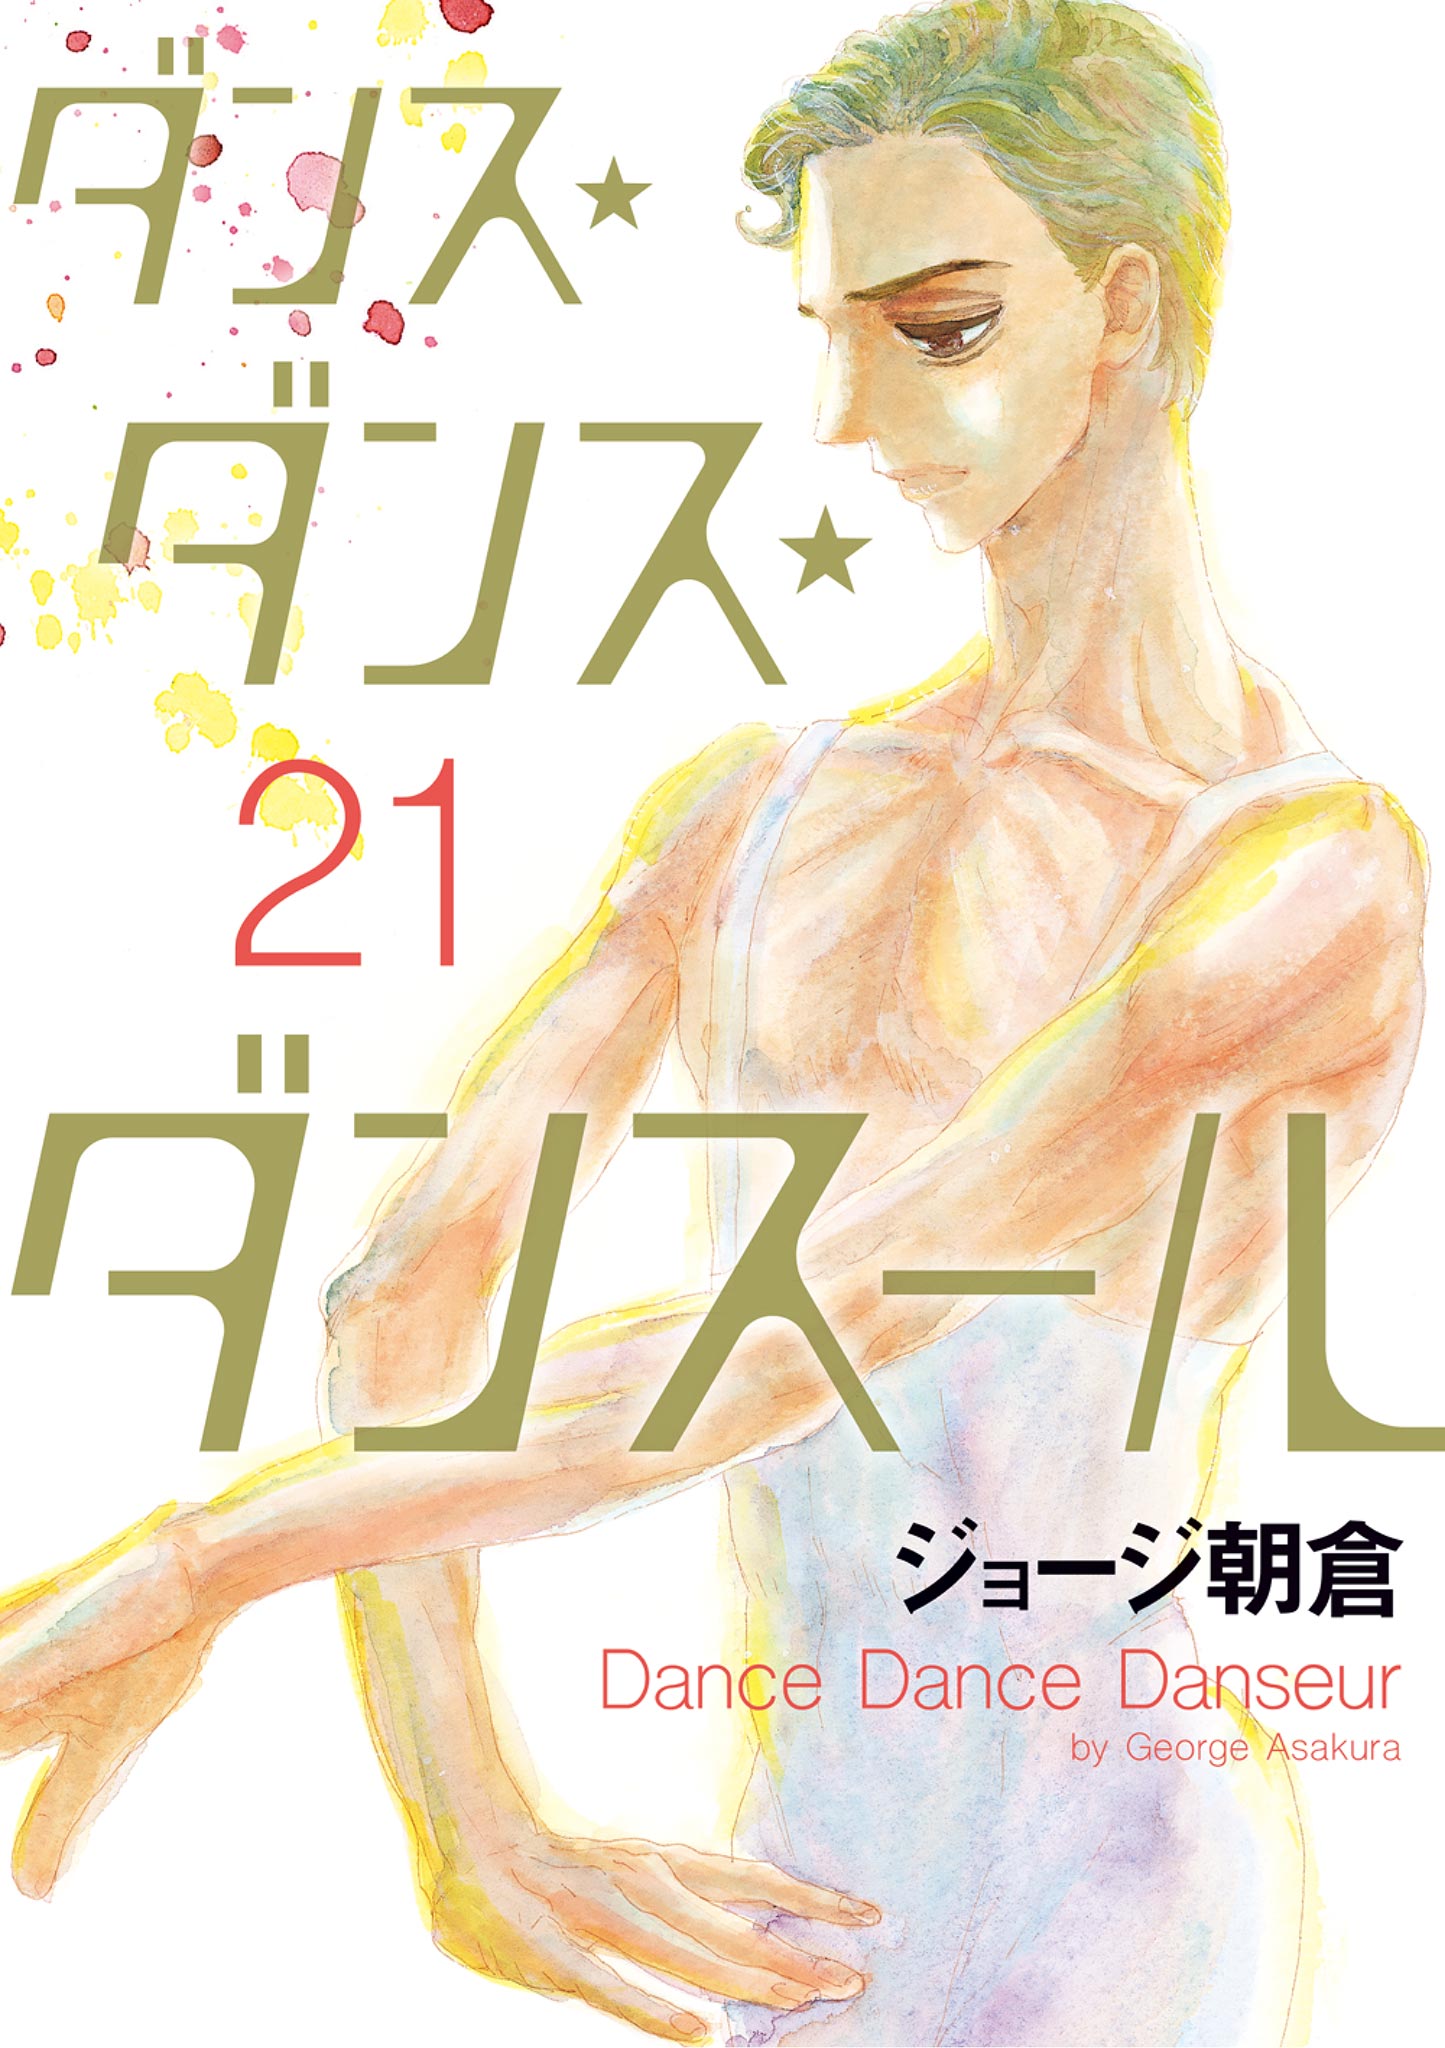 ダンス・ダンス・ダンスール 全巻セット 最新刊 - 全巻セット